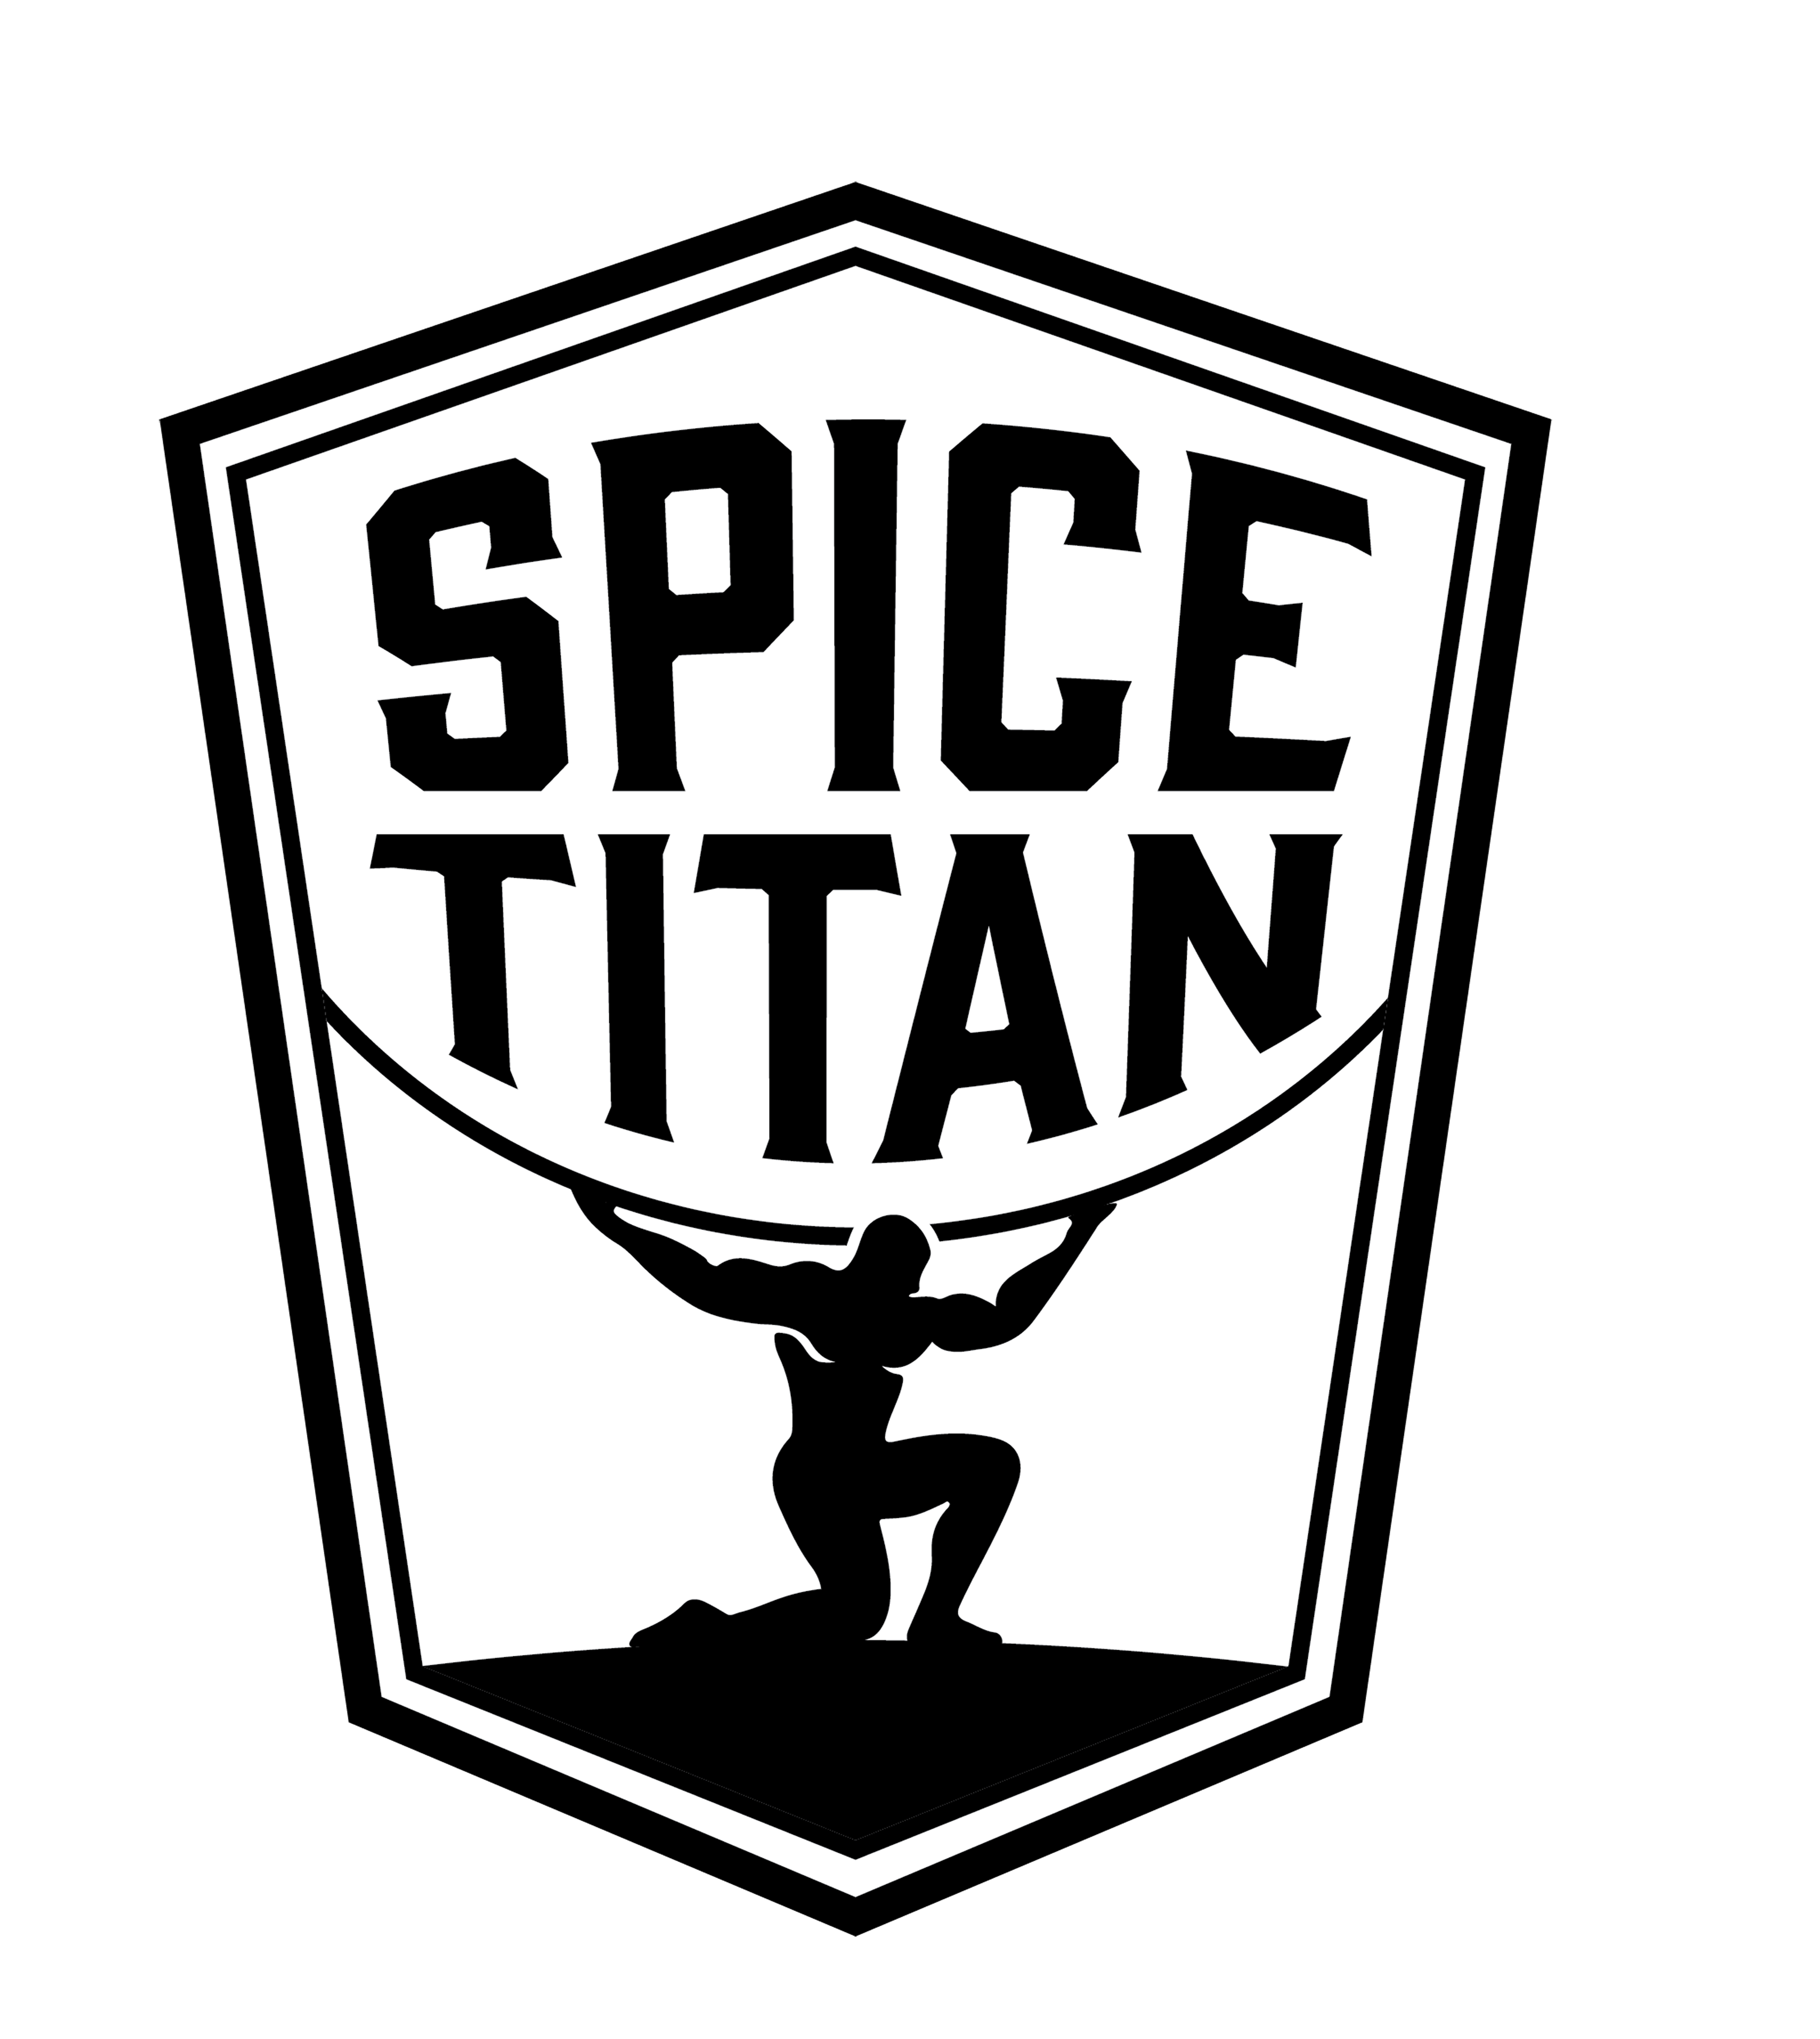 Spicetitan.com